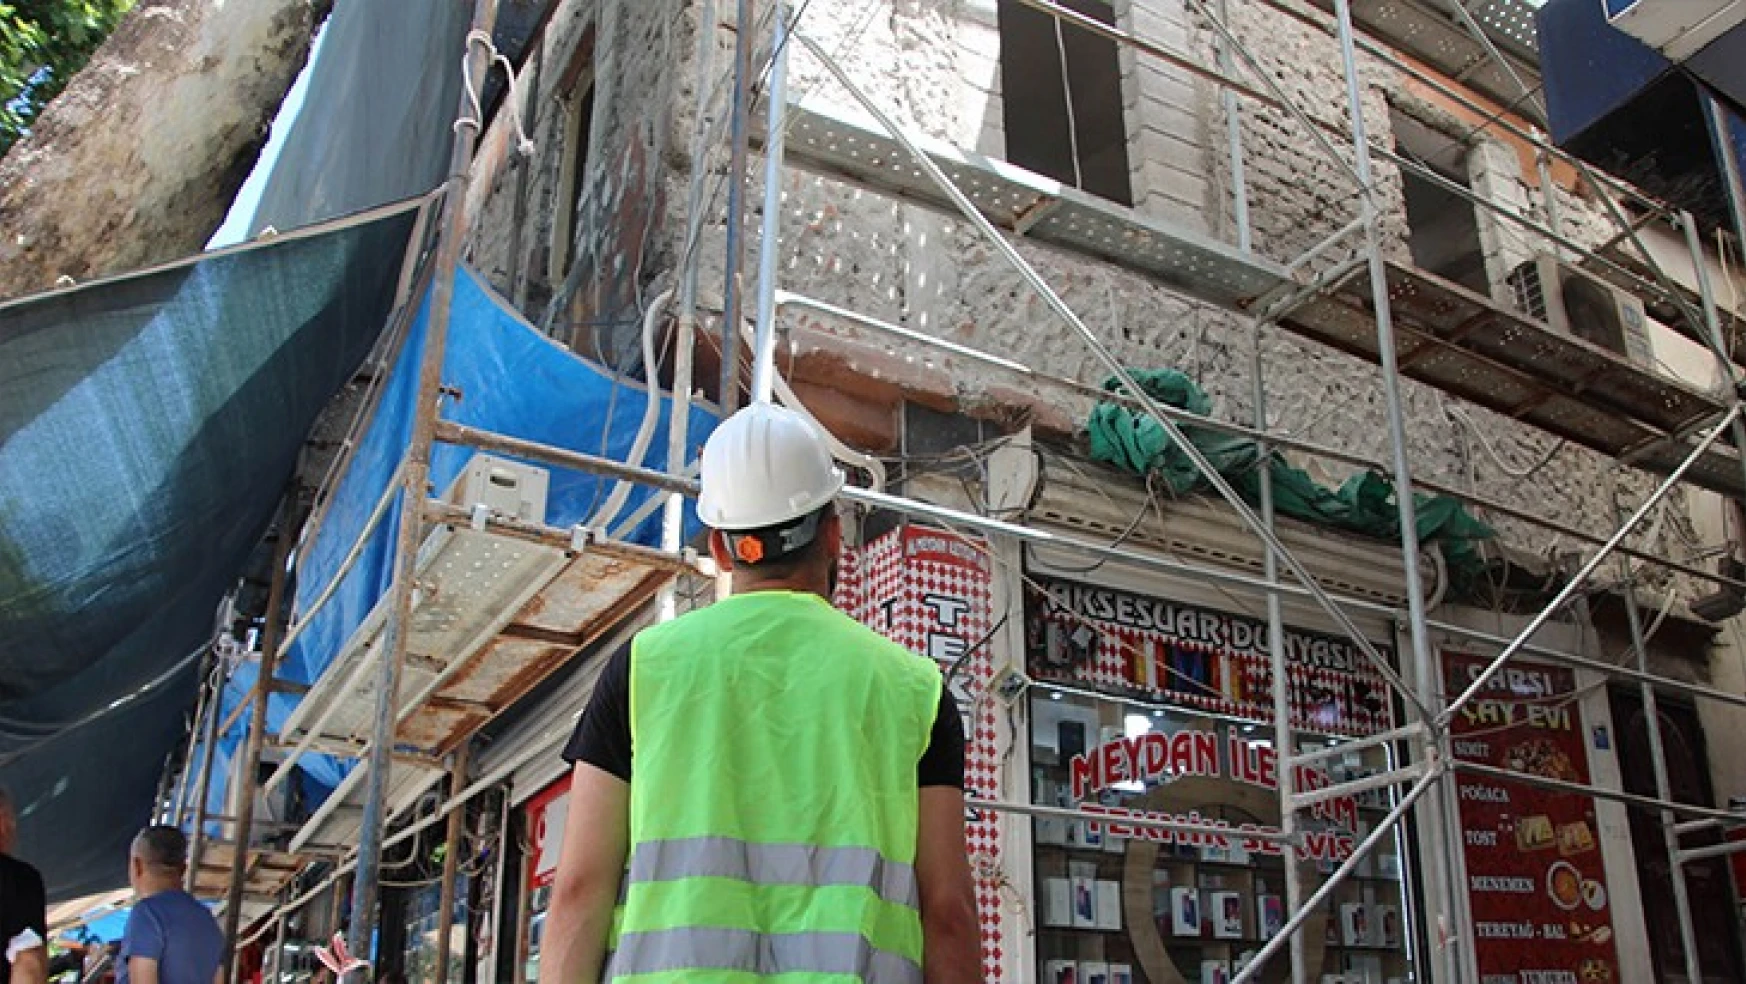 Kahramanmaraş'ın tarihi kapalı çarşısında yenileme projesi sürüyor